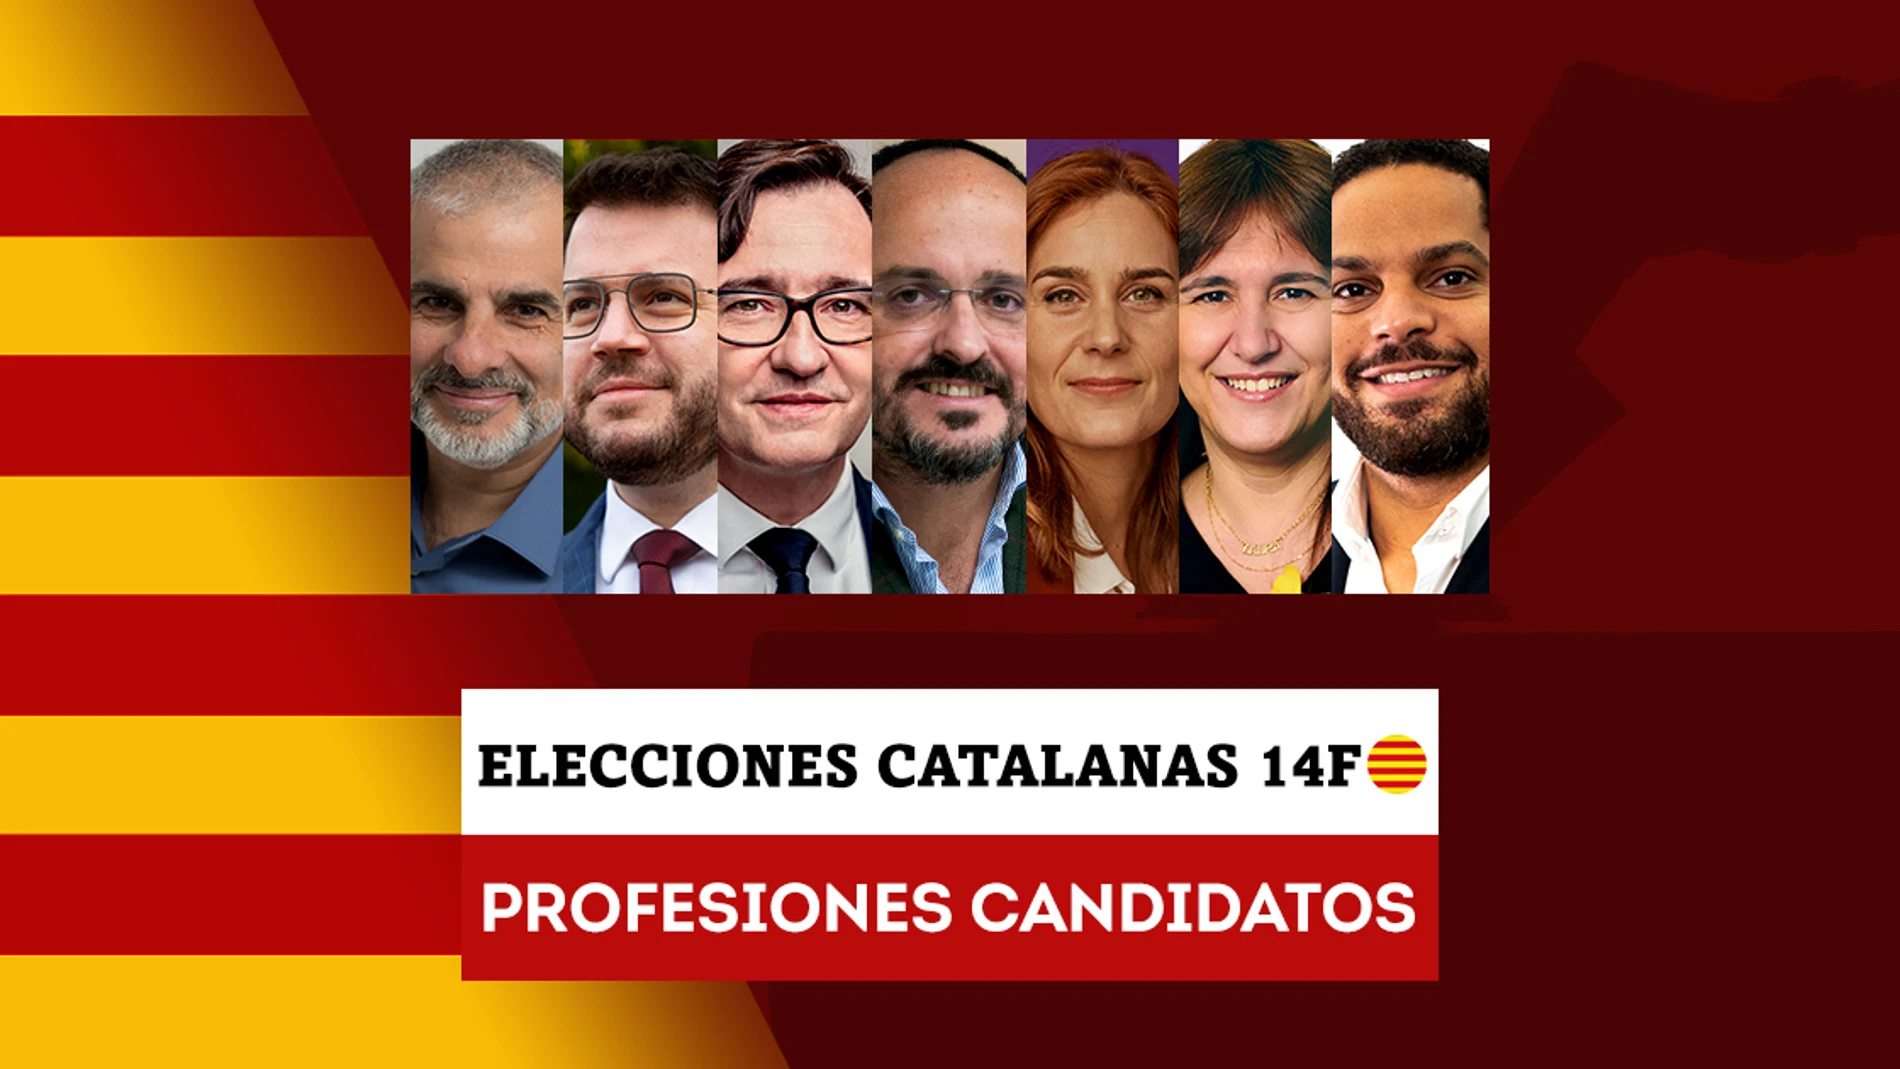 Estas son las profesiones de los candidatos a las elecciones catalanas